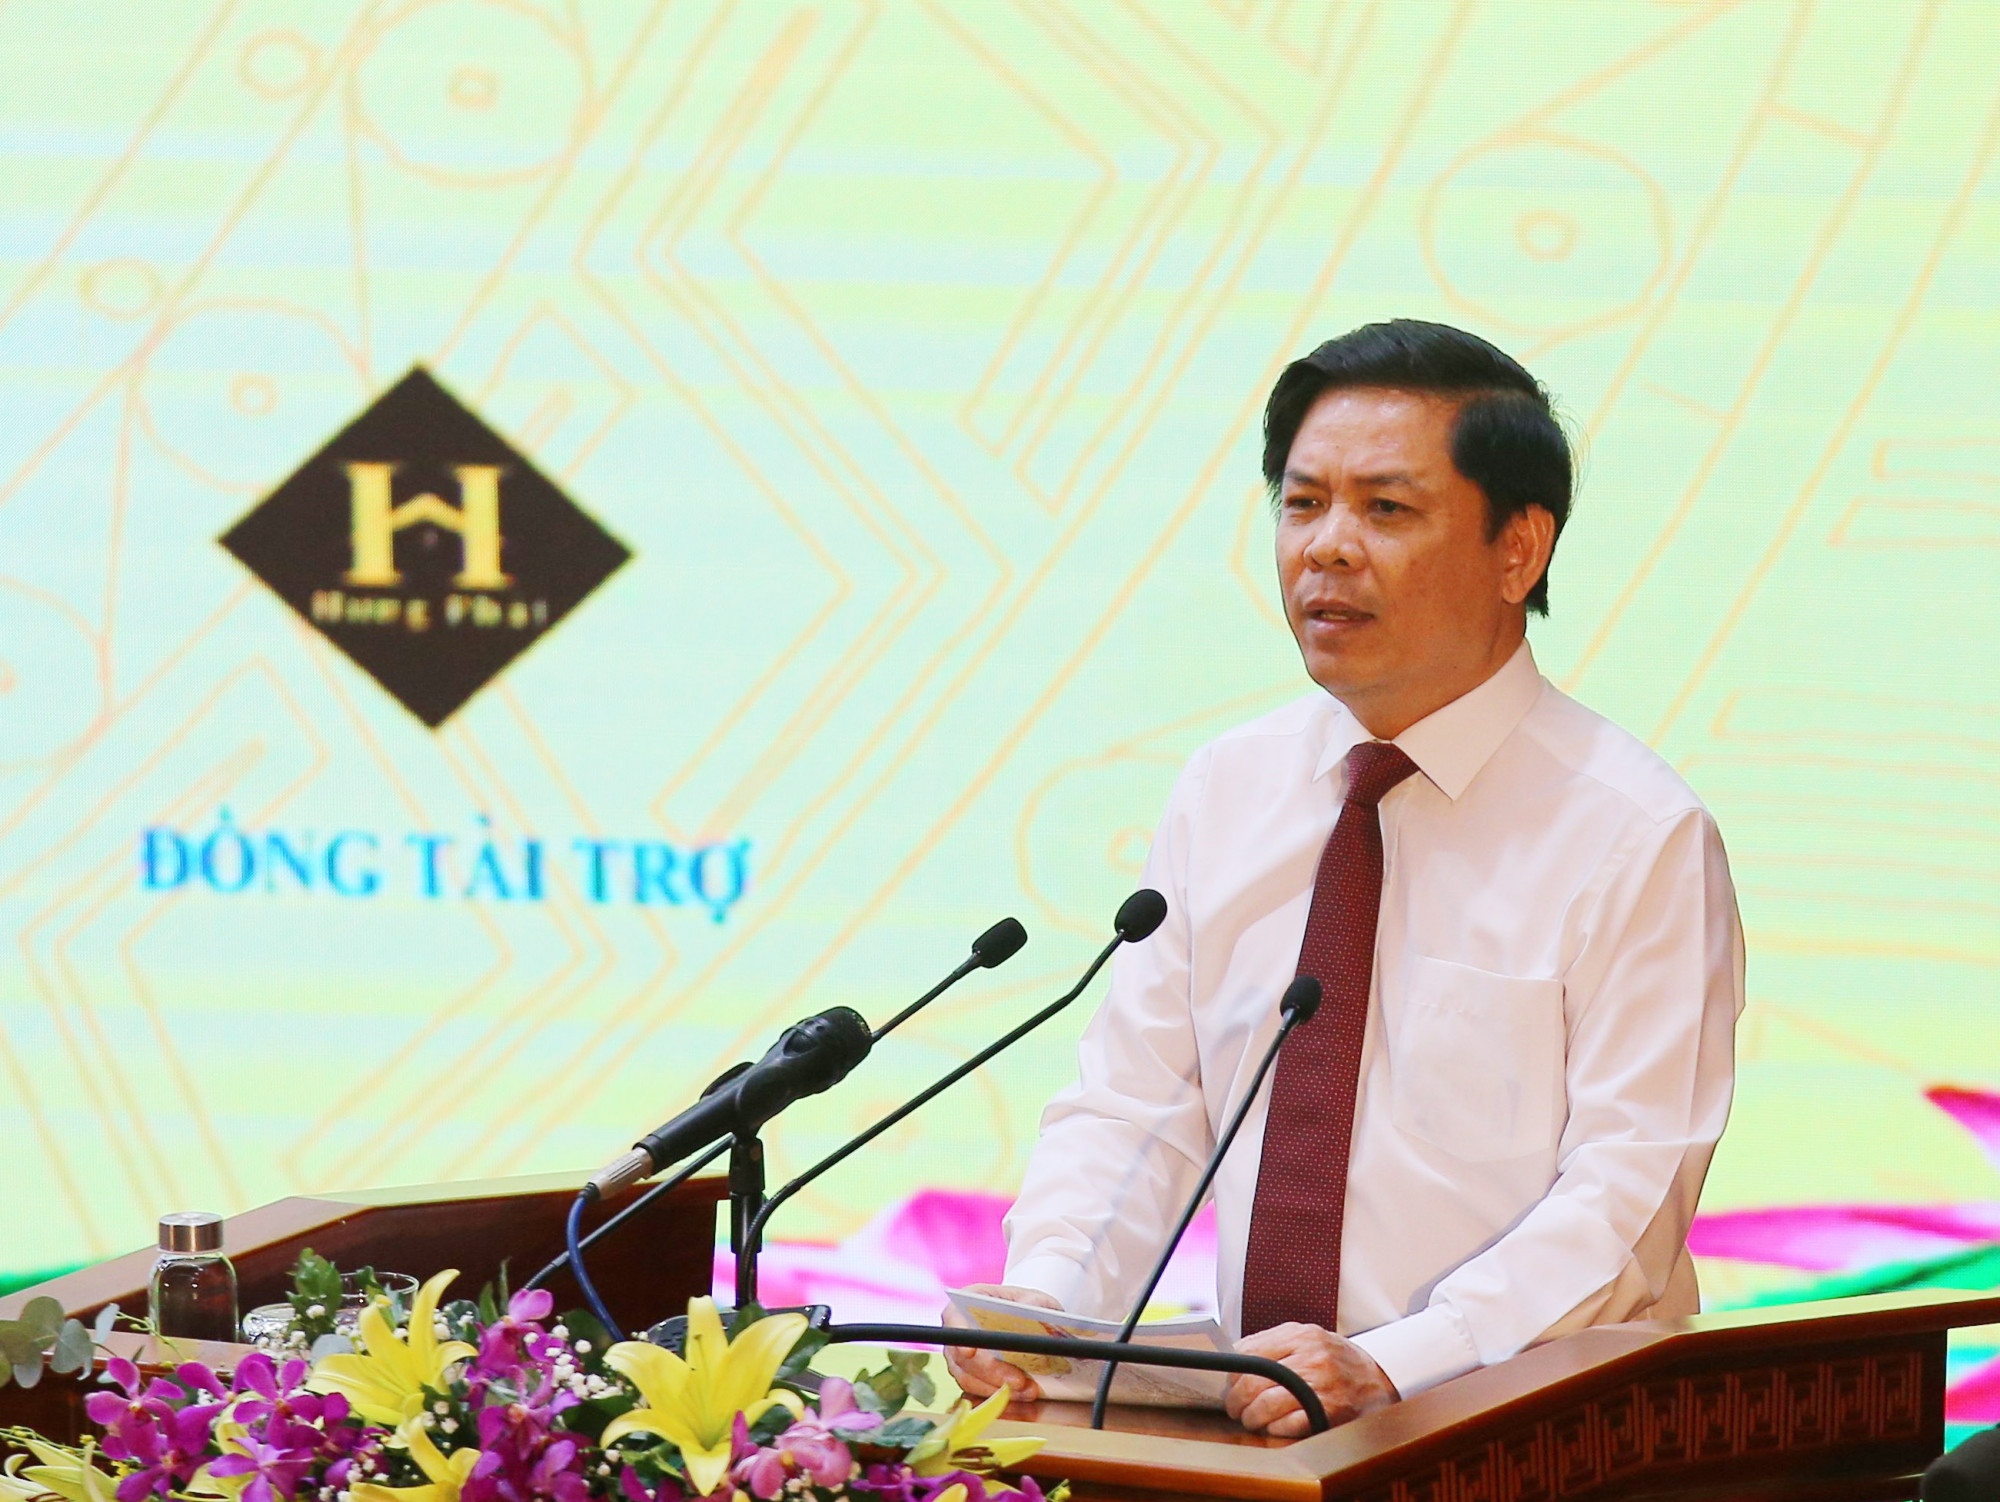 Bộ trưởng Nguyễn Văn Thể cho biết, cảng Trần Đề của tỉnh Sóc Trăng sẽ là điểm đột phá chung của khu vực đồng bằng sông Cửu Long